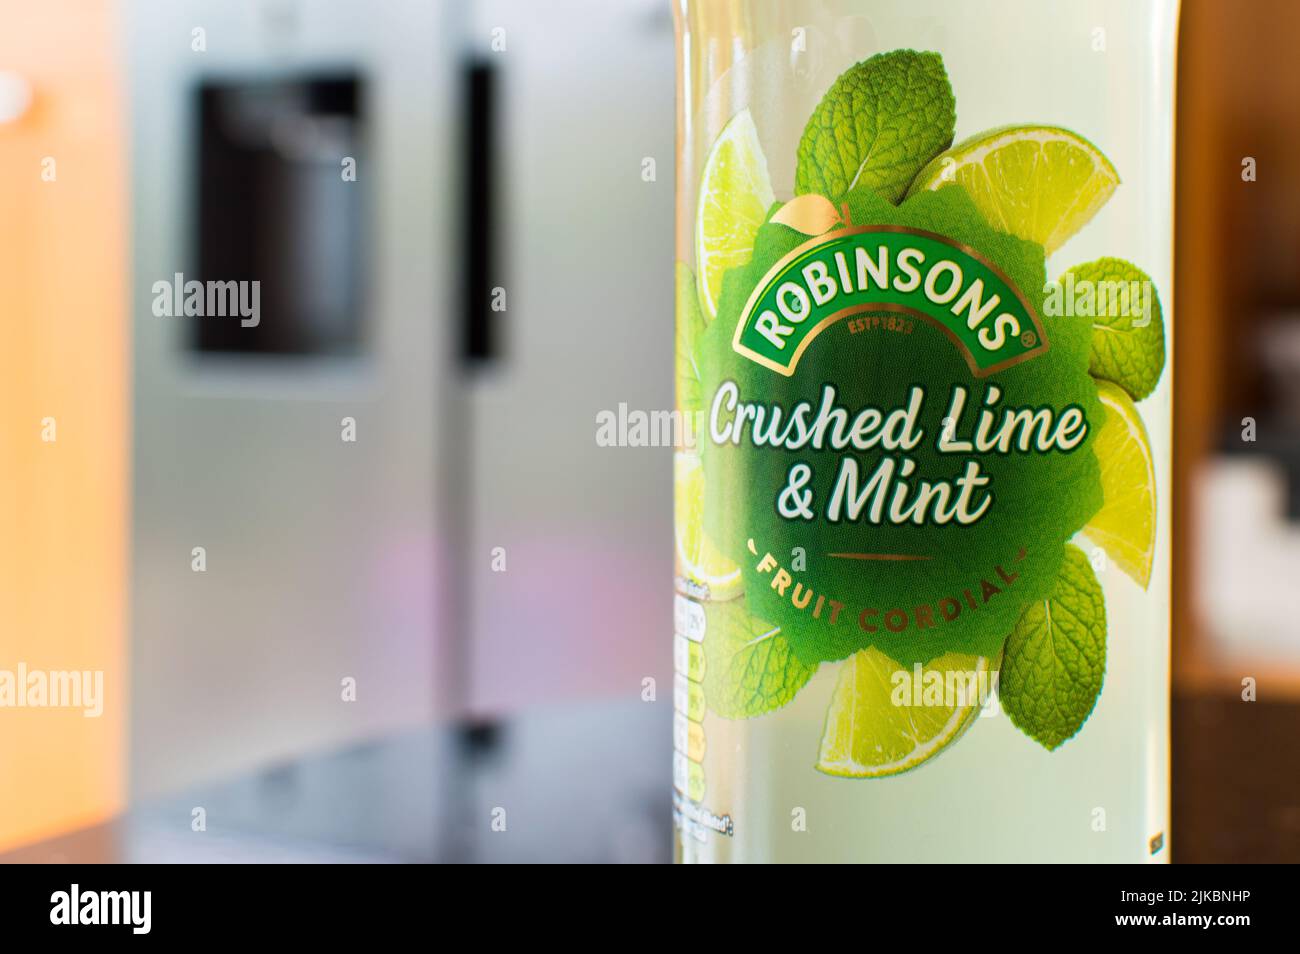 Robinsons schiacciato Lime e Mint Cordial concentrato bevanda in una bottiglia su un piano di cucina Foto Stock